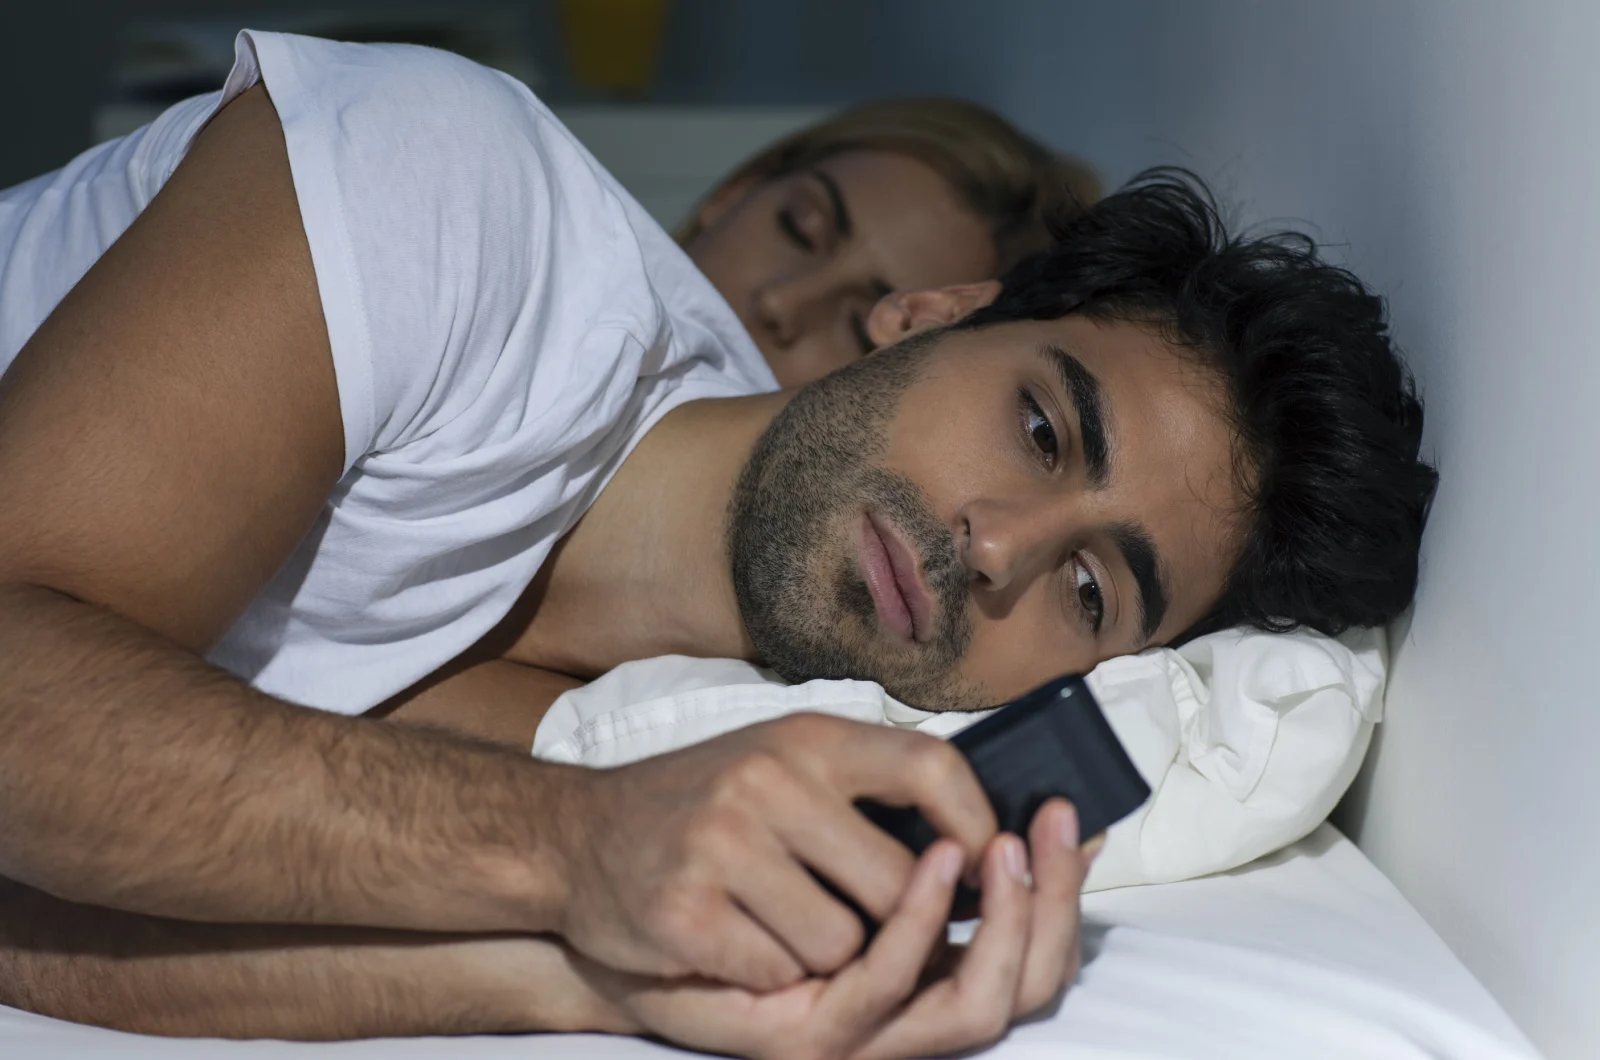 Mann tippt am Telefon, während Frau schläft